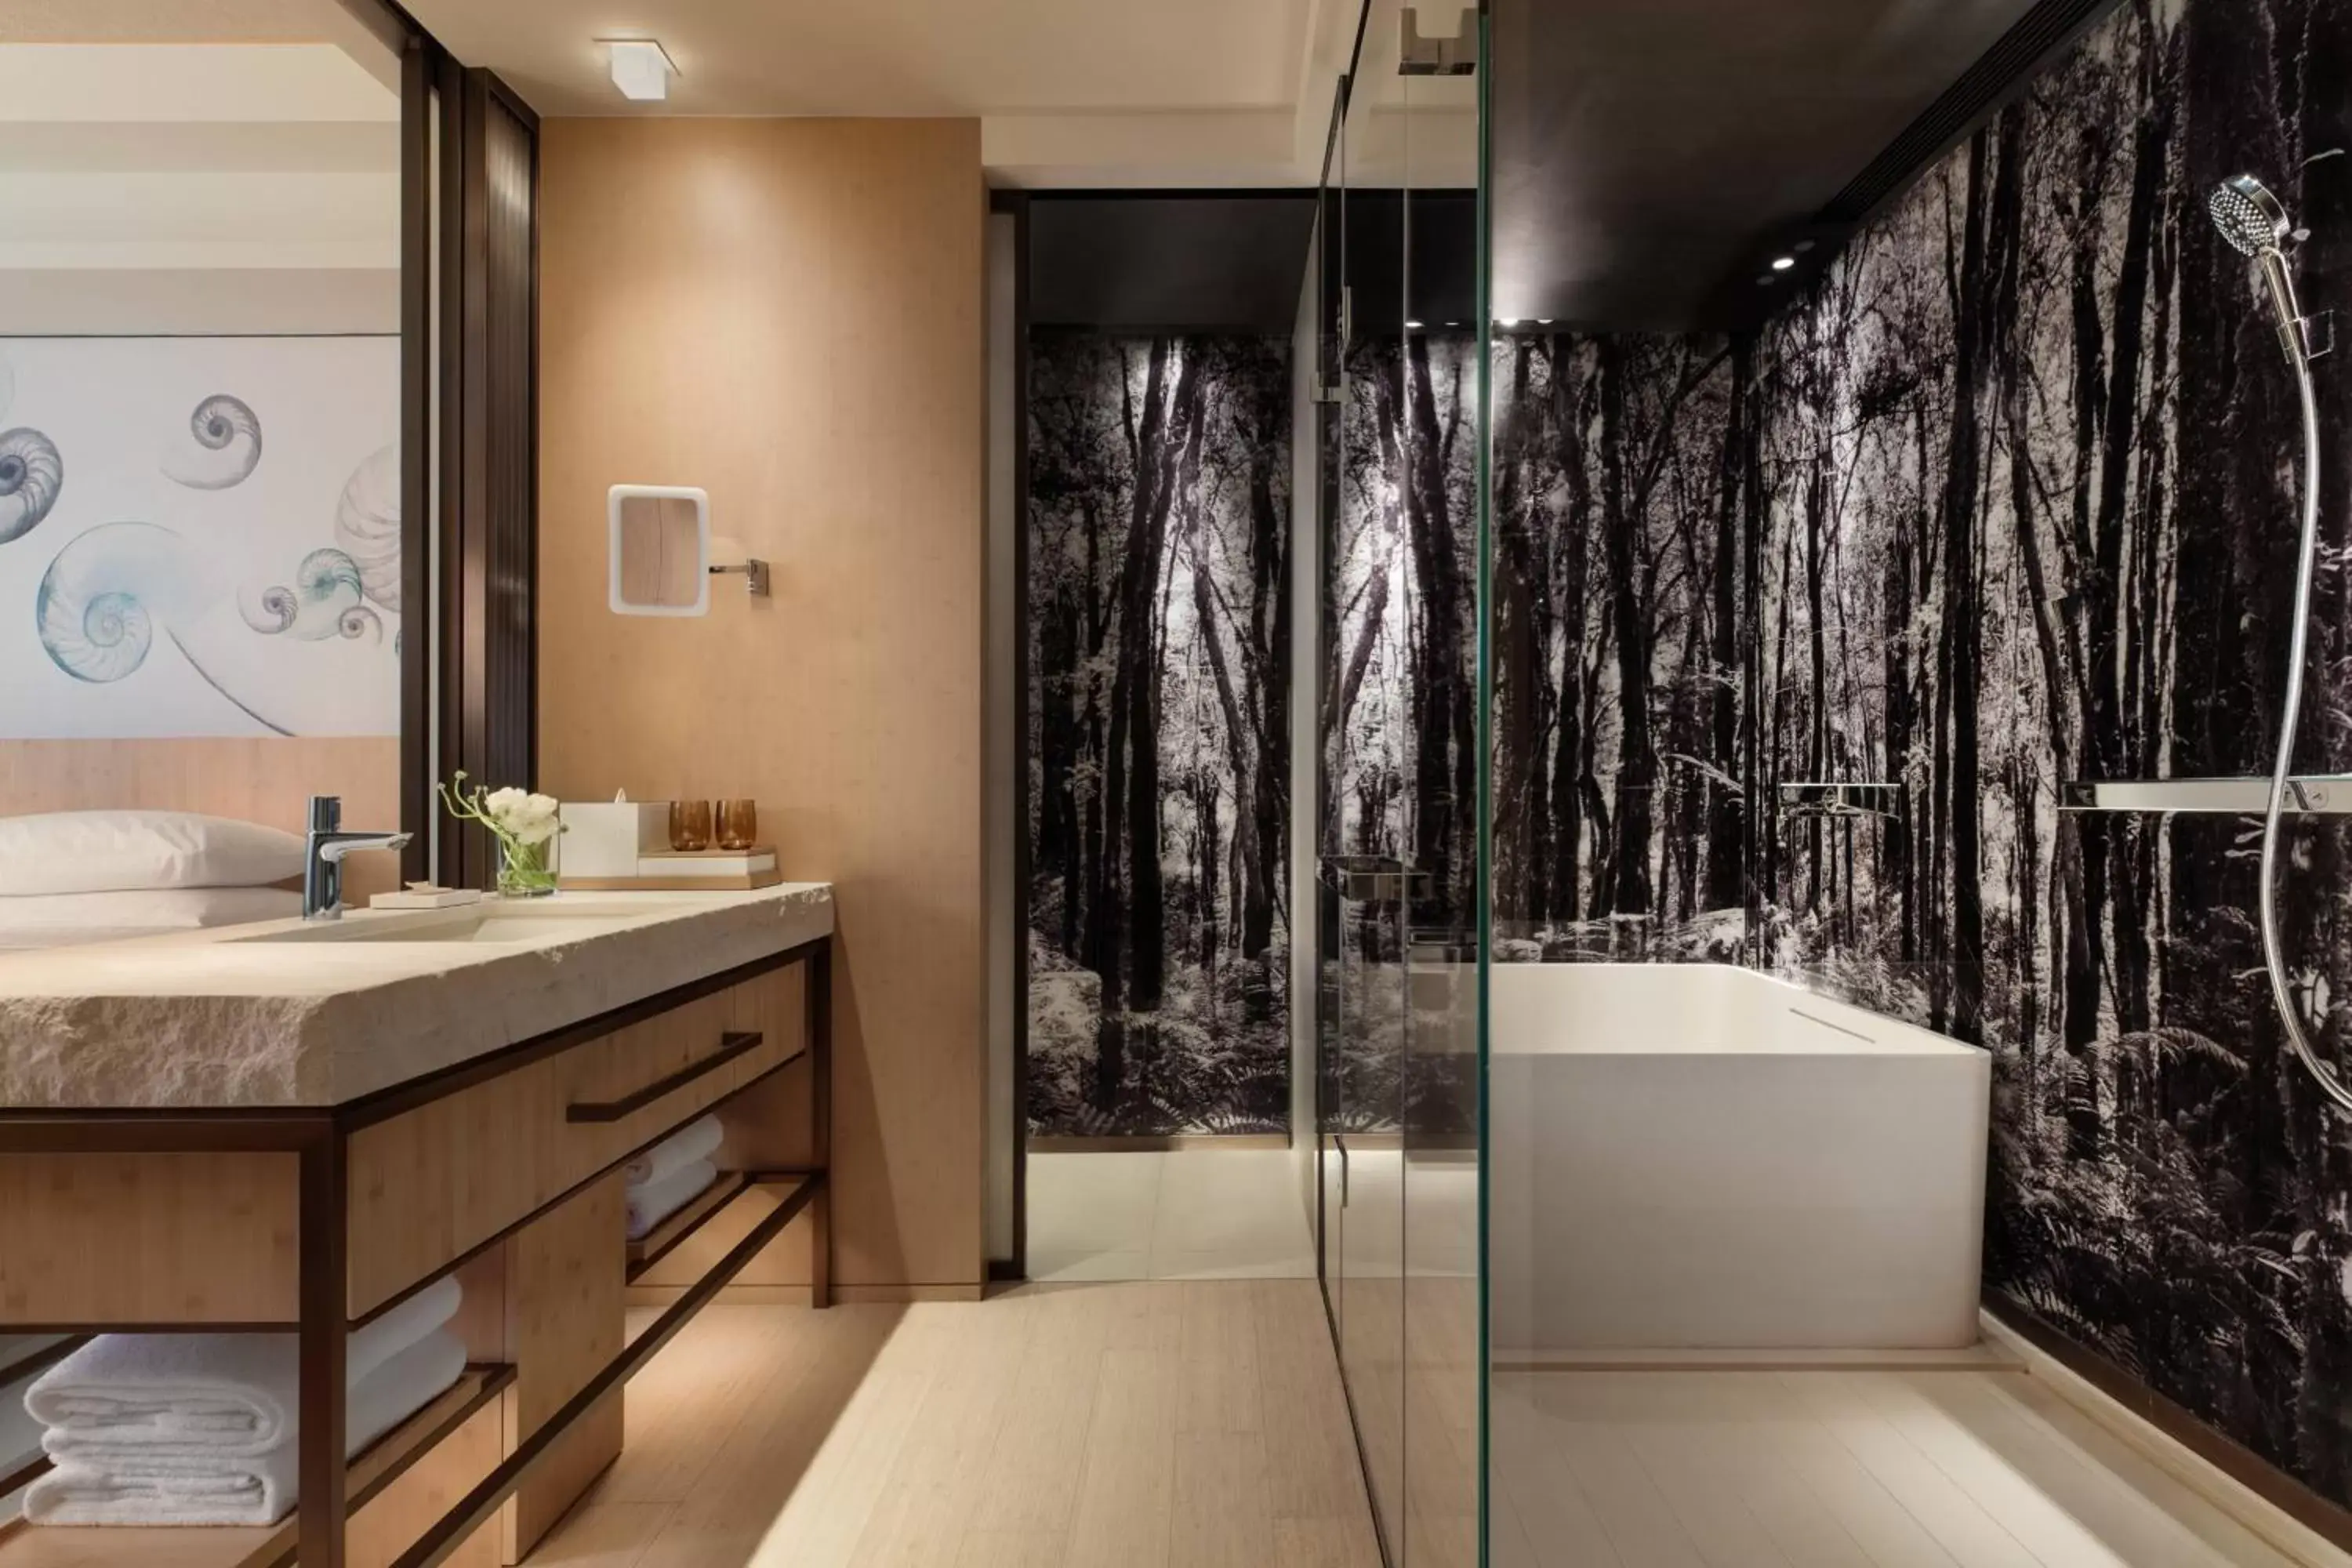 Bathroom in Hong Kong Ocean Park Marriott Hotel